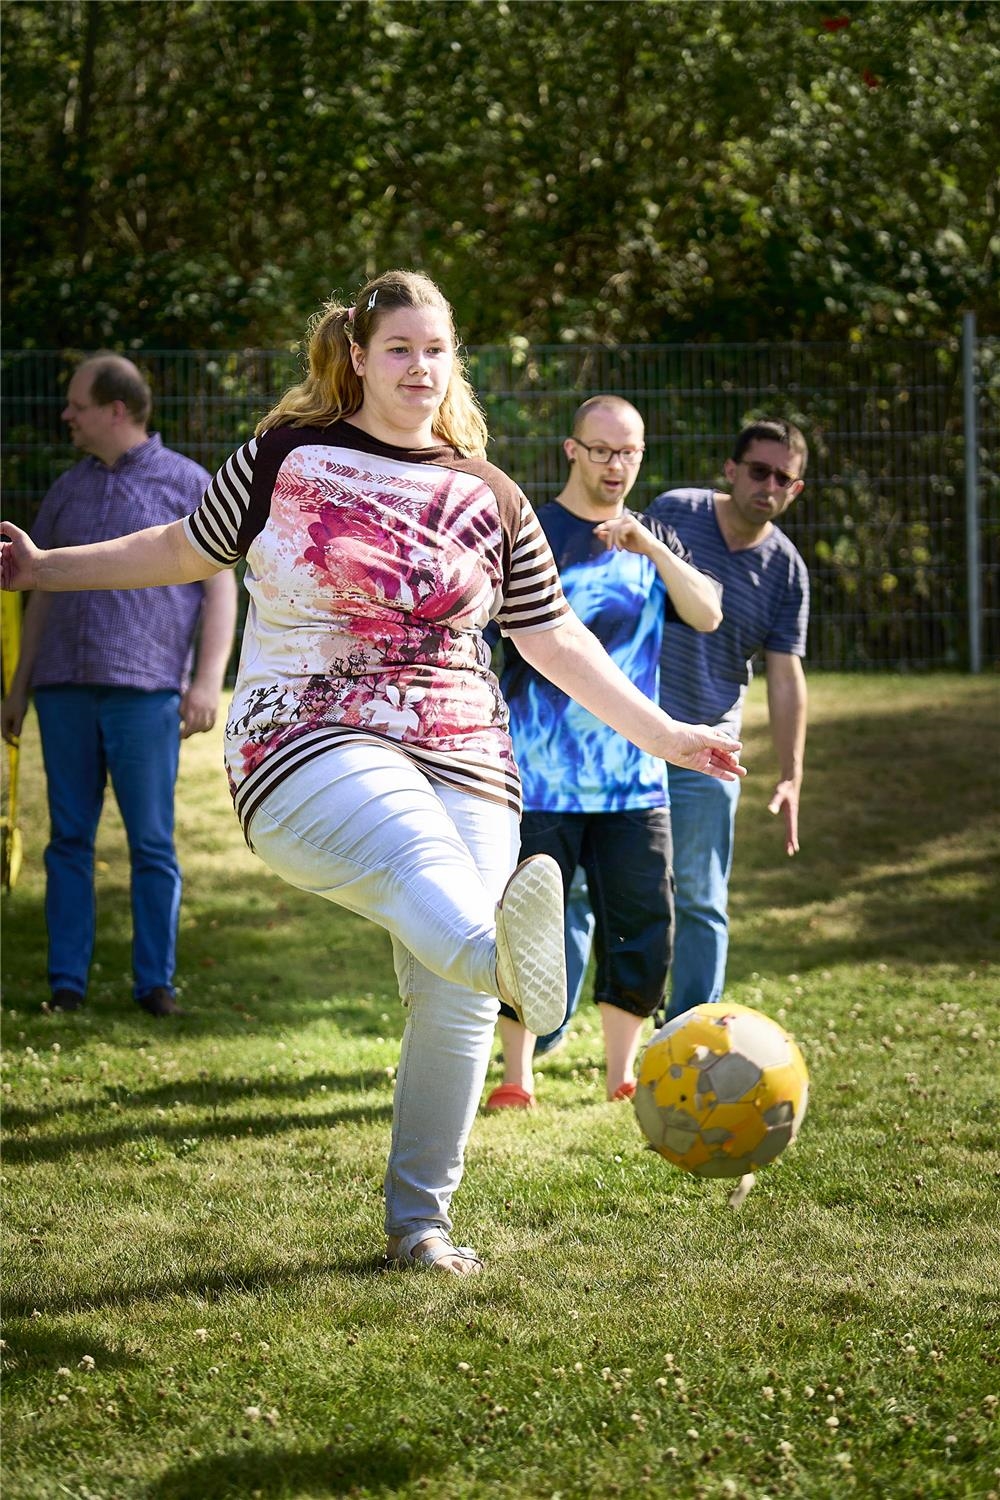 Eine junge Frau schießt einen Fußball. 